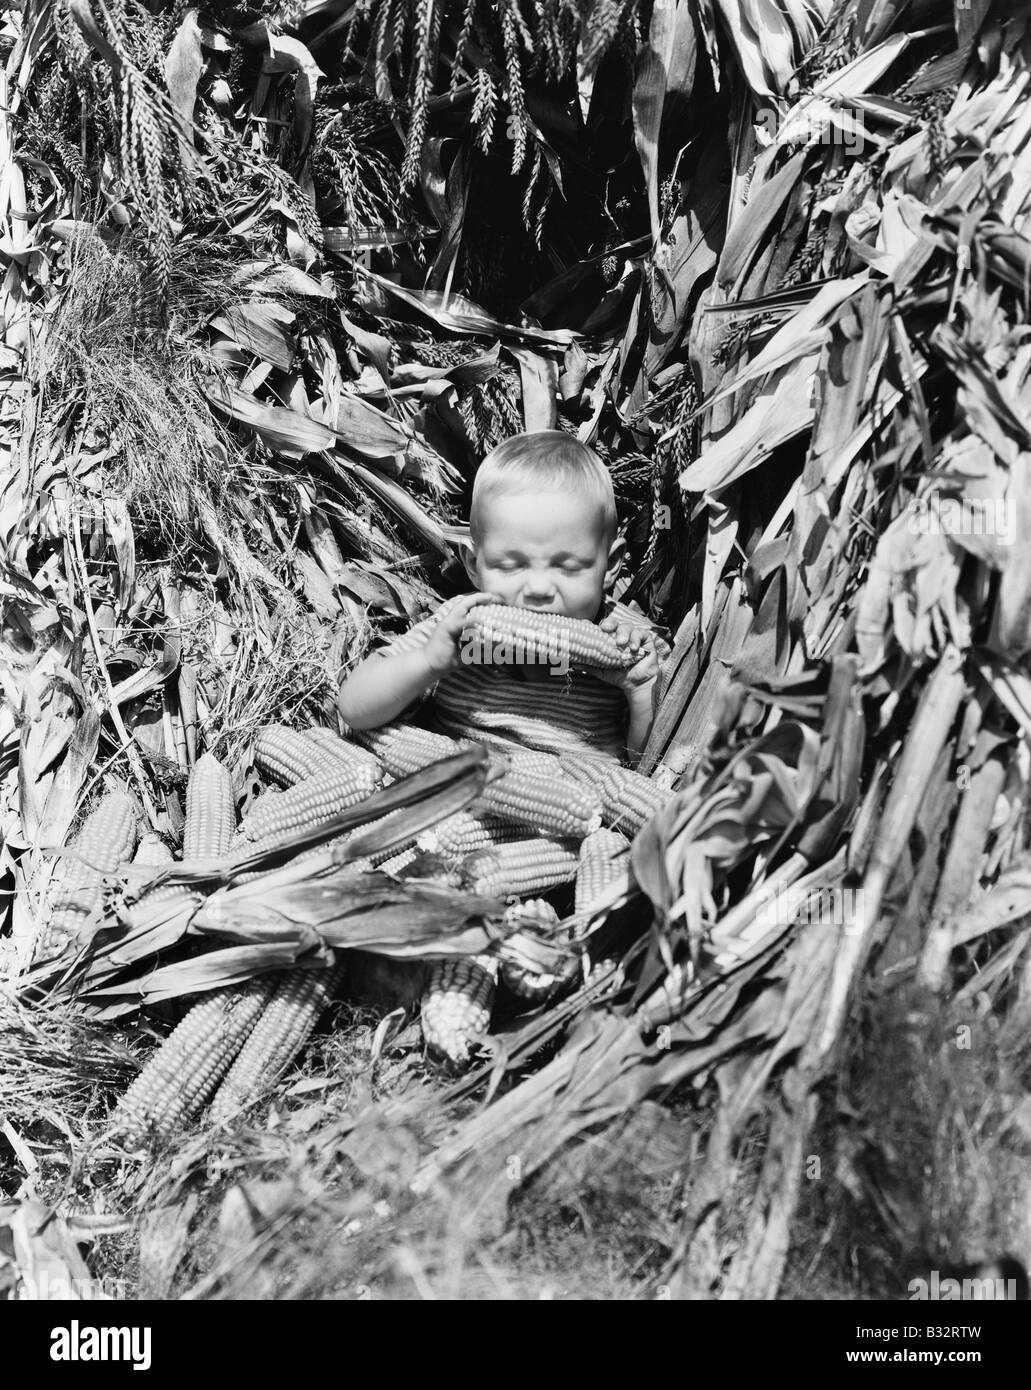 Junge in einem Maisfeld einen Maiskolben zu essen Stockfoto